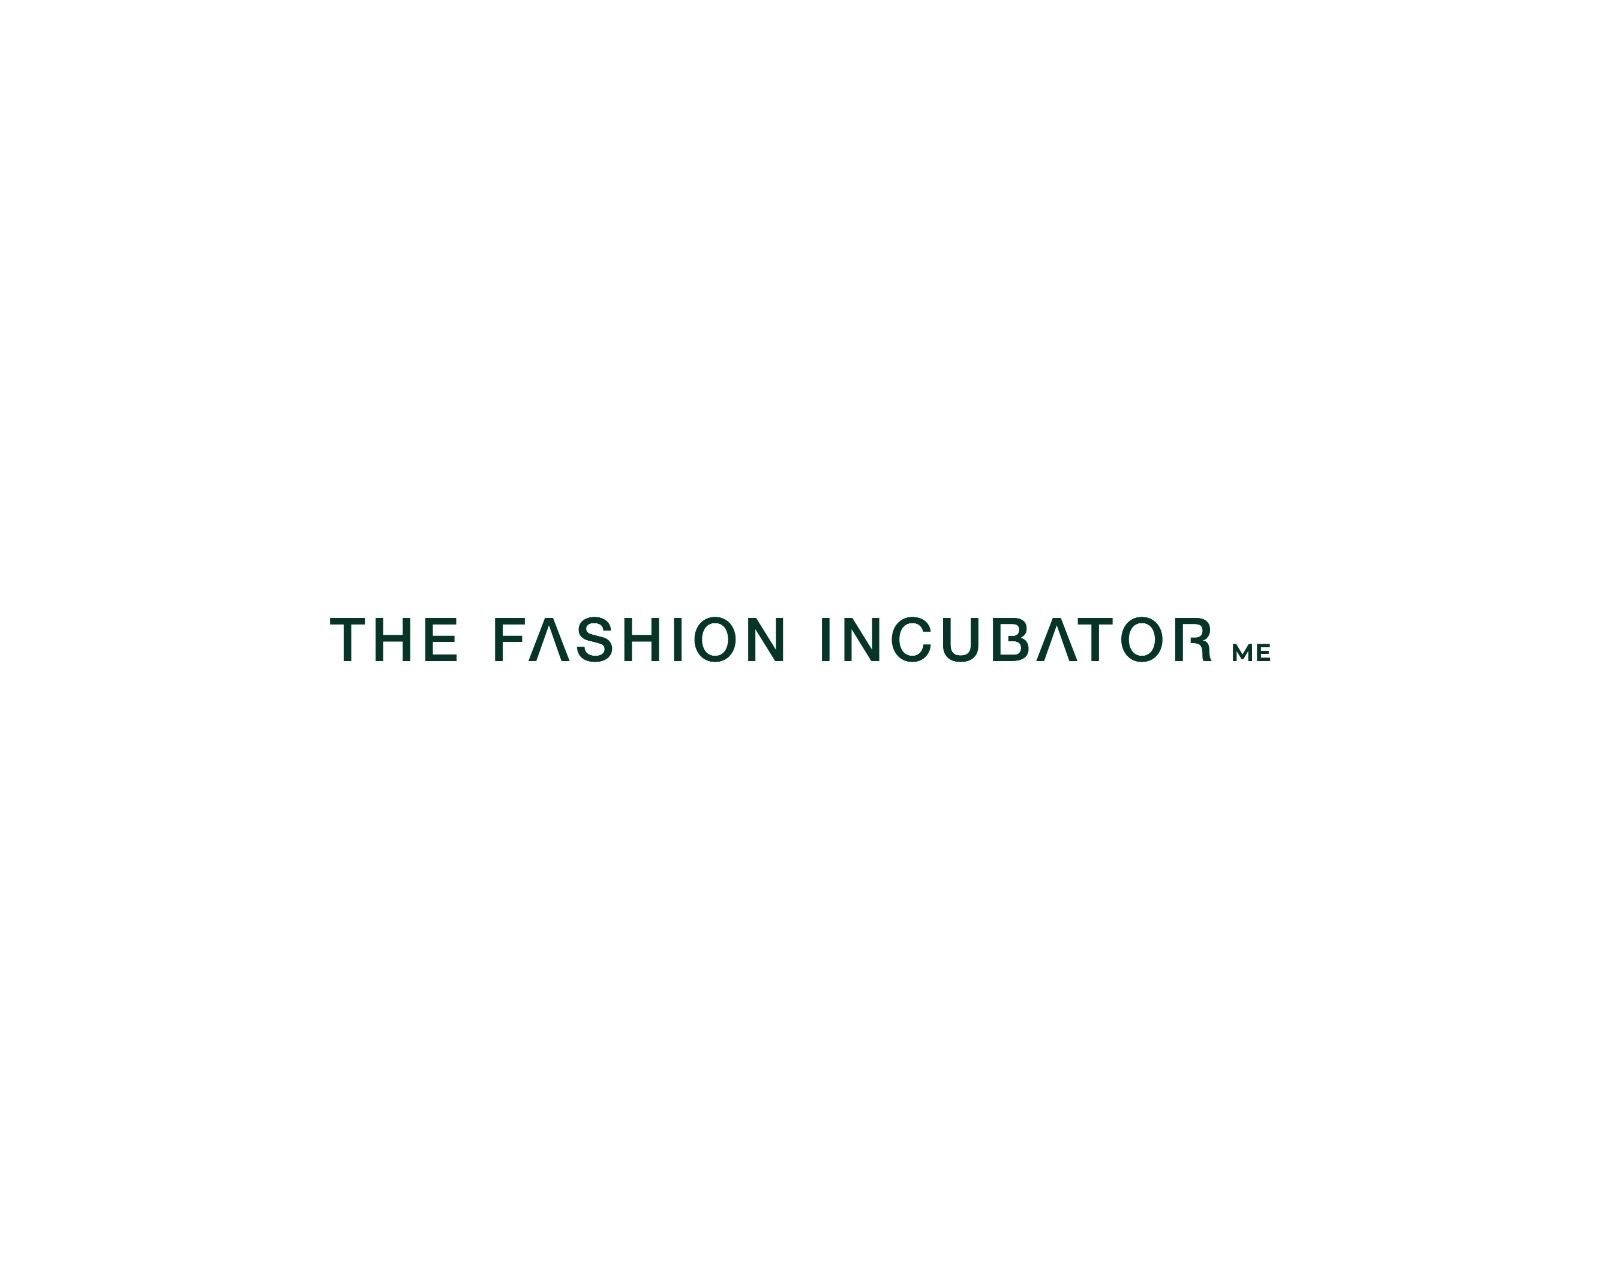 The Fashion Incubator